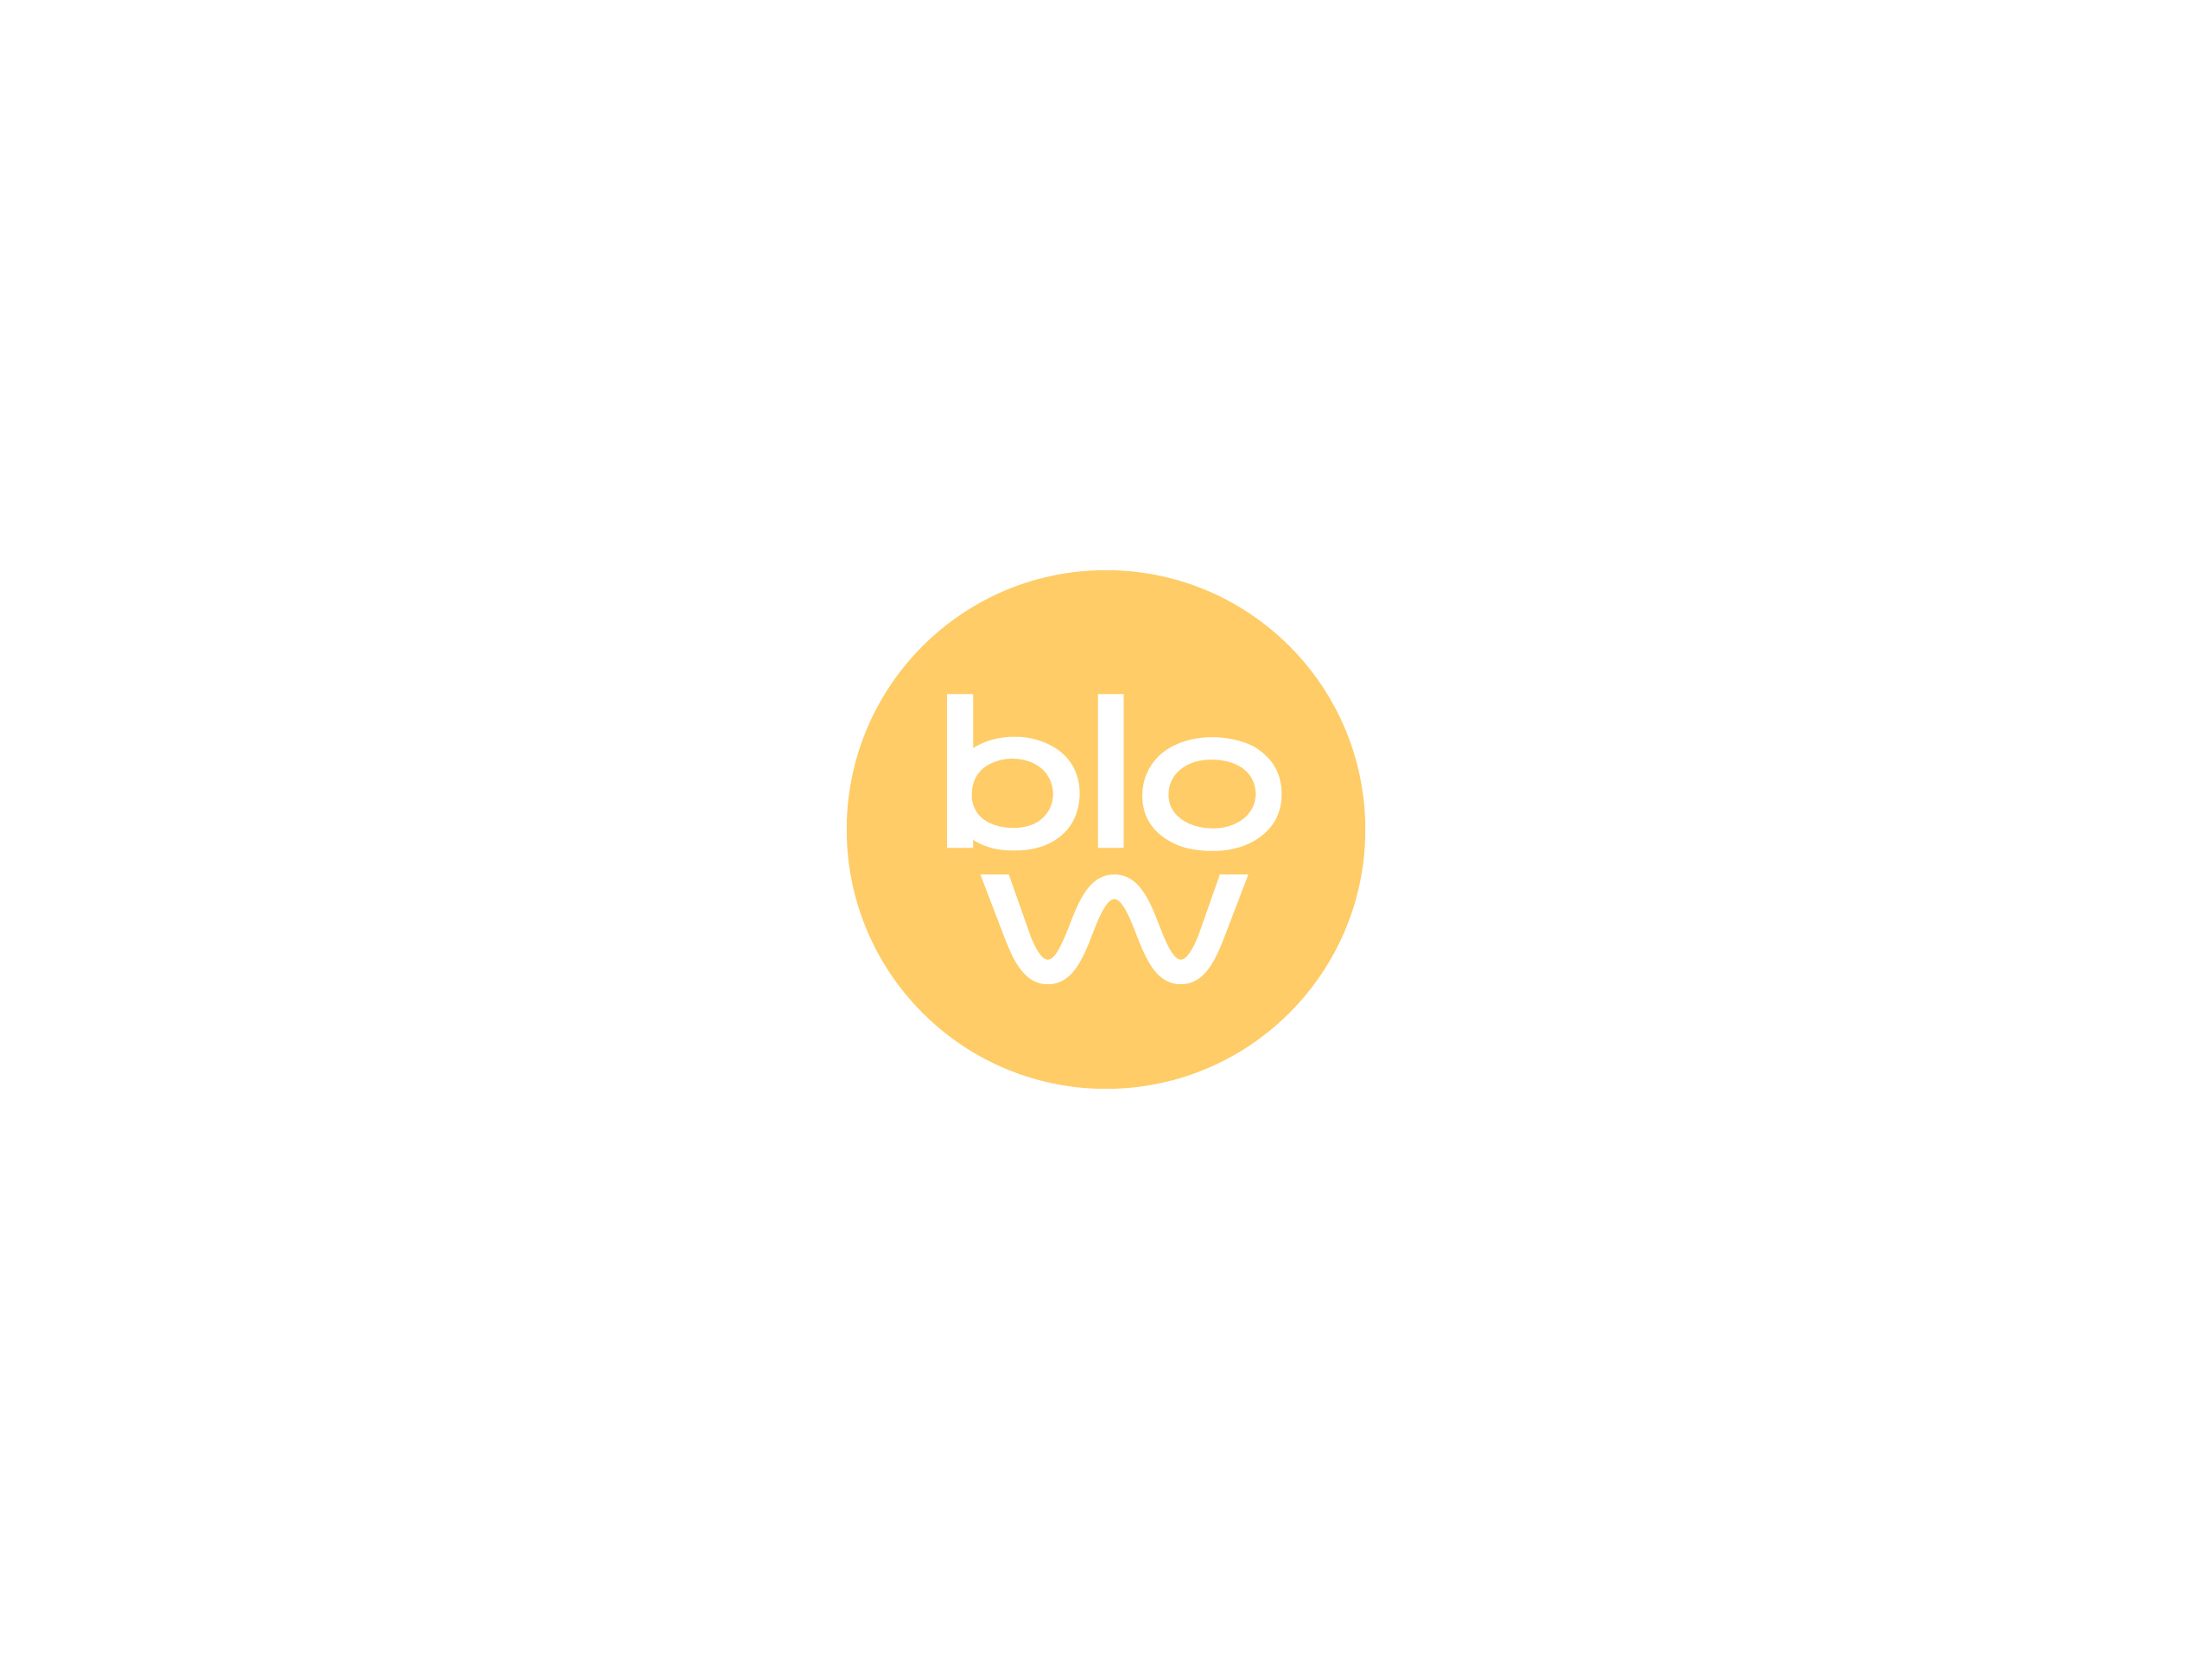 BloBlow Branding